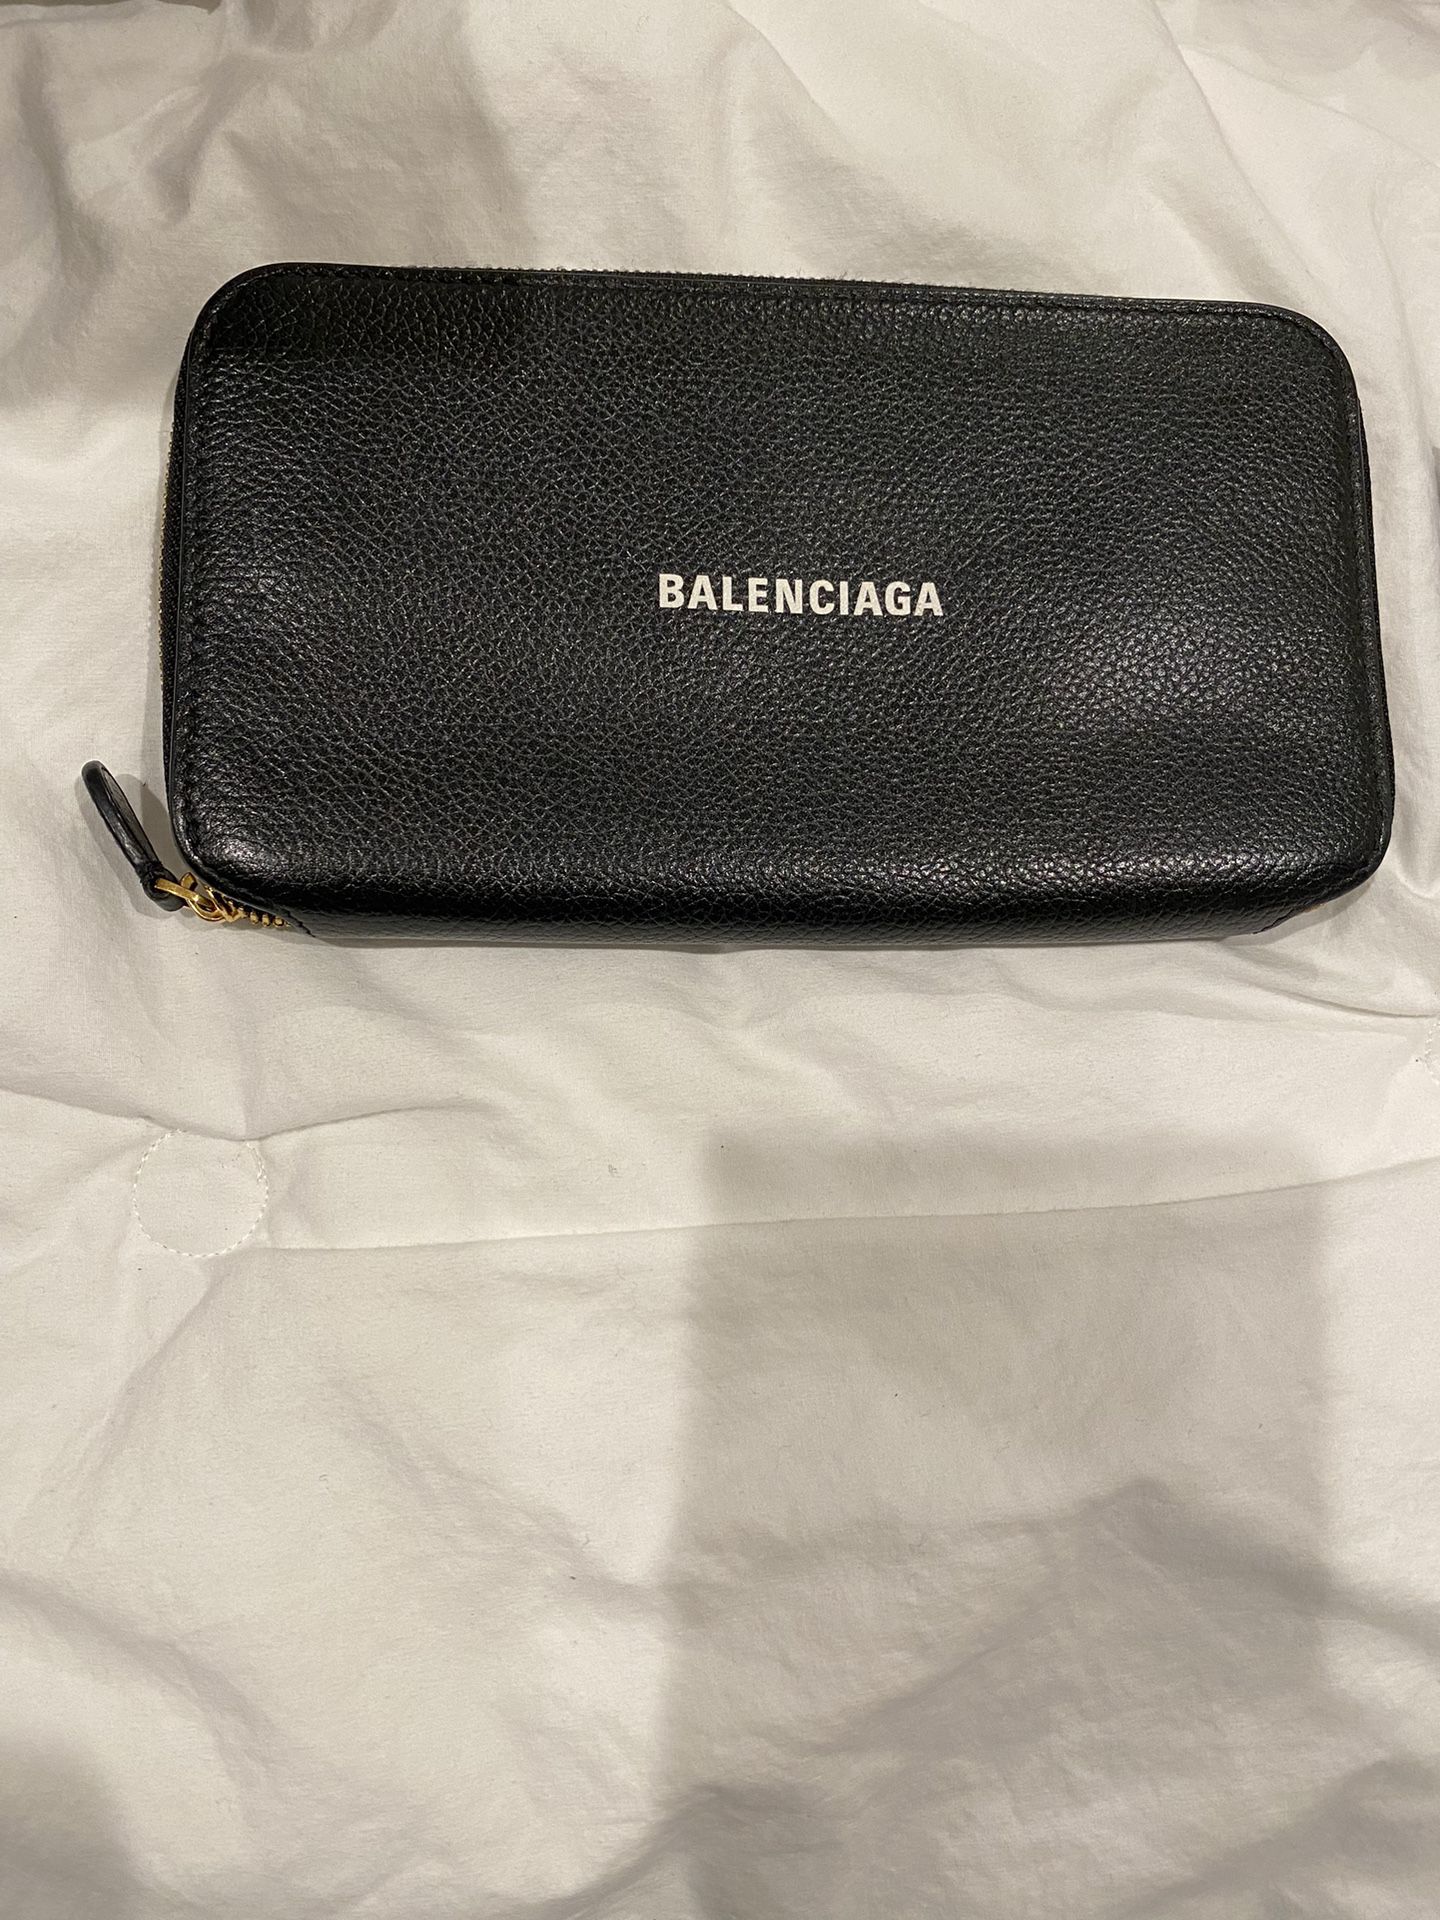 Brand New Balenciaga Wallet Black